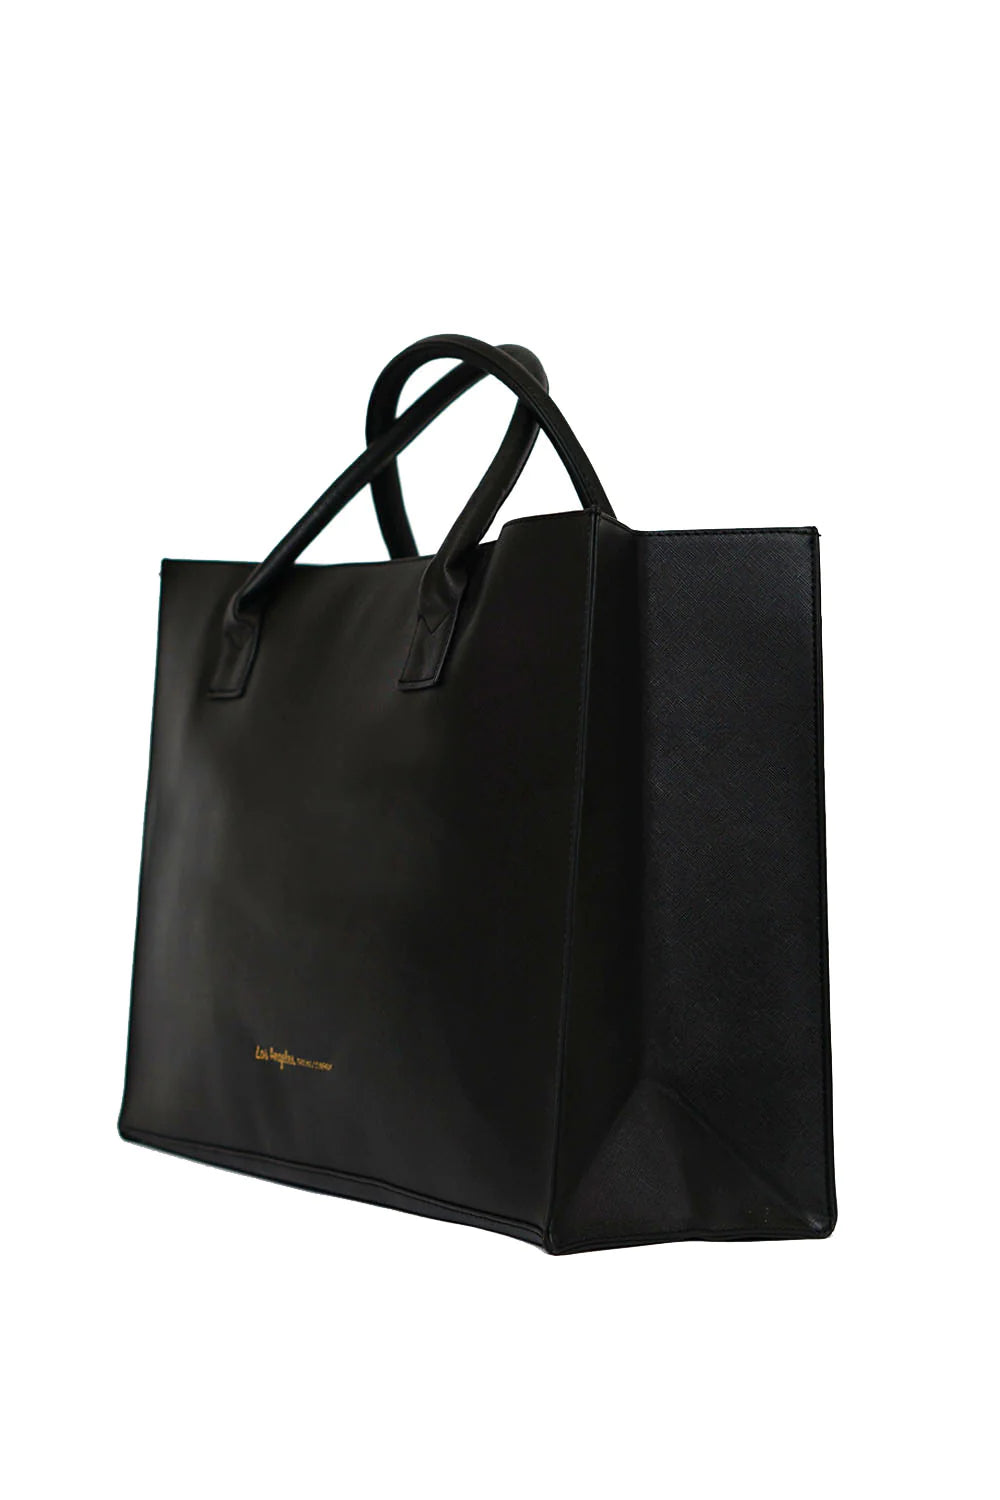 Queen Bee Tote Bag (Black)